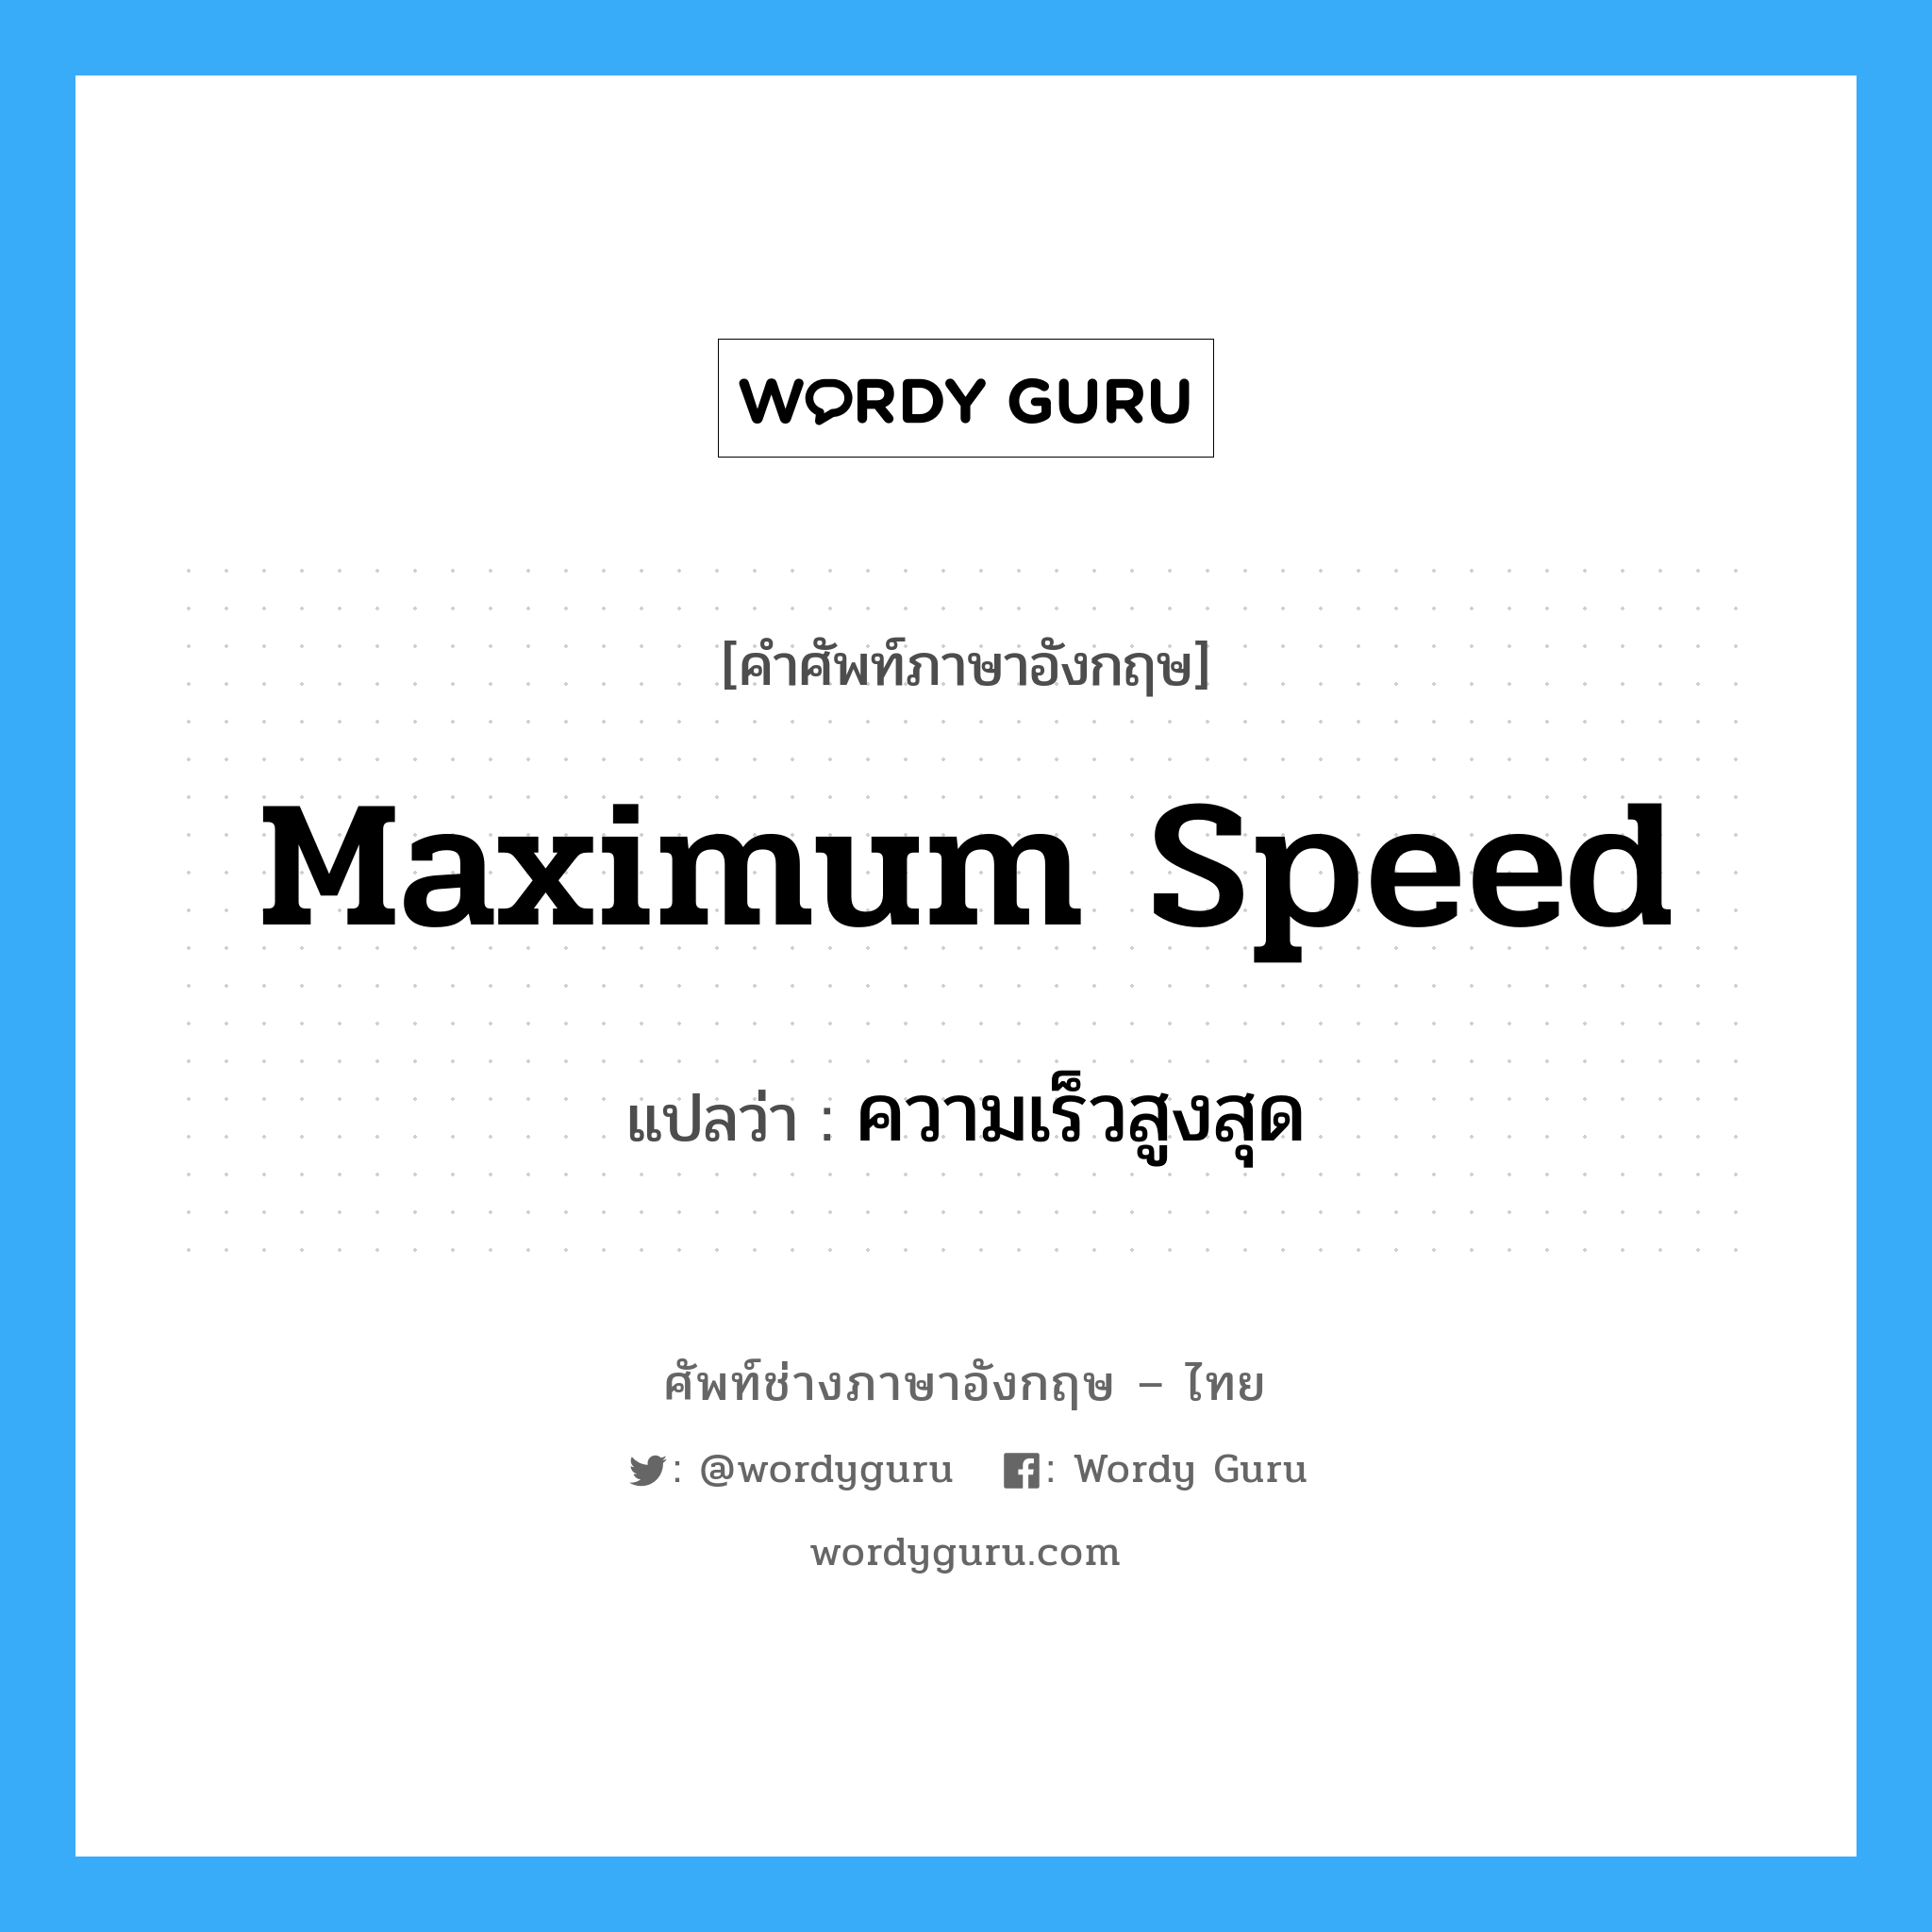 ความเร็วสูงสุด ภาษาอังกฤษ?, คำศัพท์ช่างภาษาอังกฤษ - ไทย ความเร็วสูงสุด คำศัพท์ภาษาอังกฤษ ความเร็วสูงสุด แปลว่า maximum speed